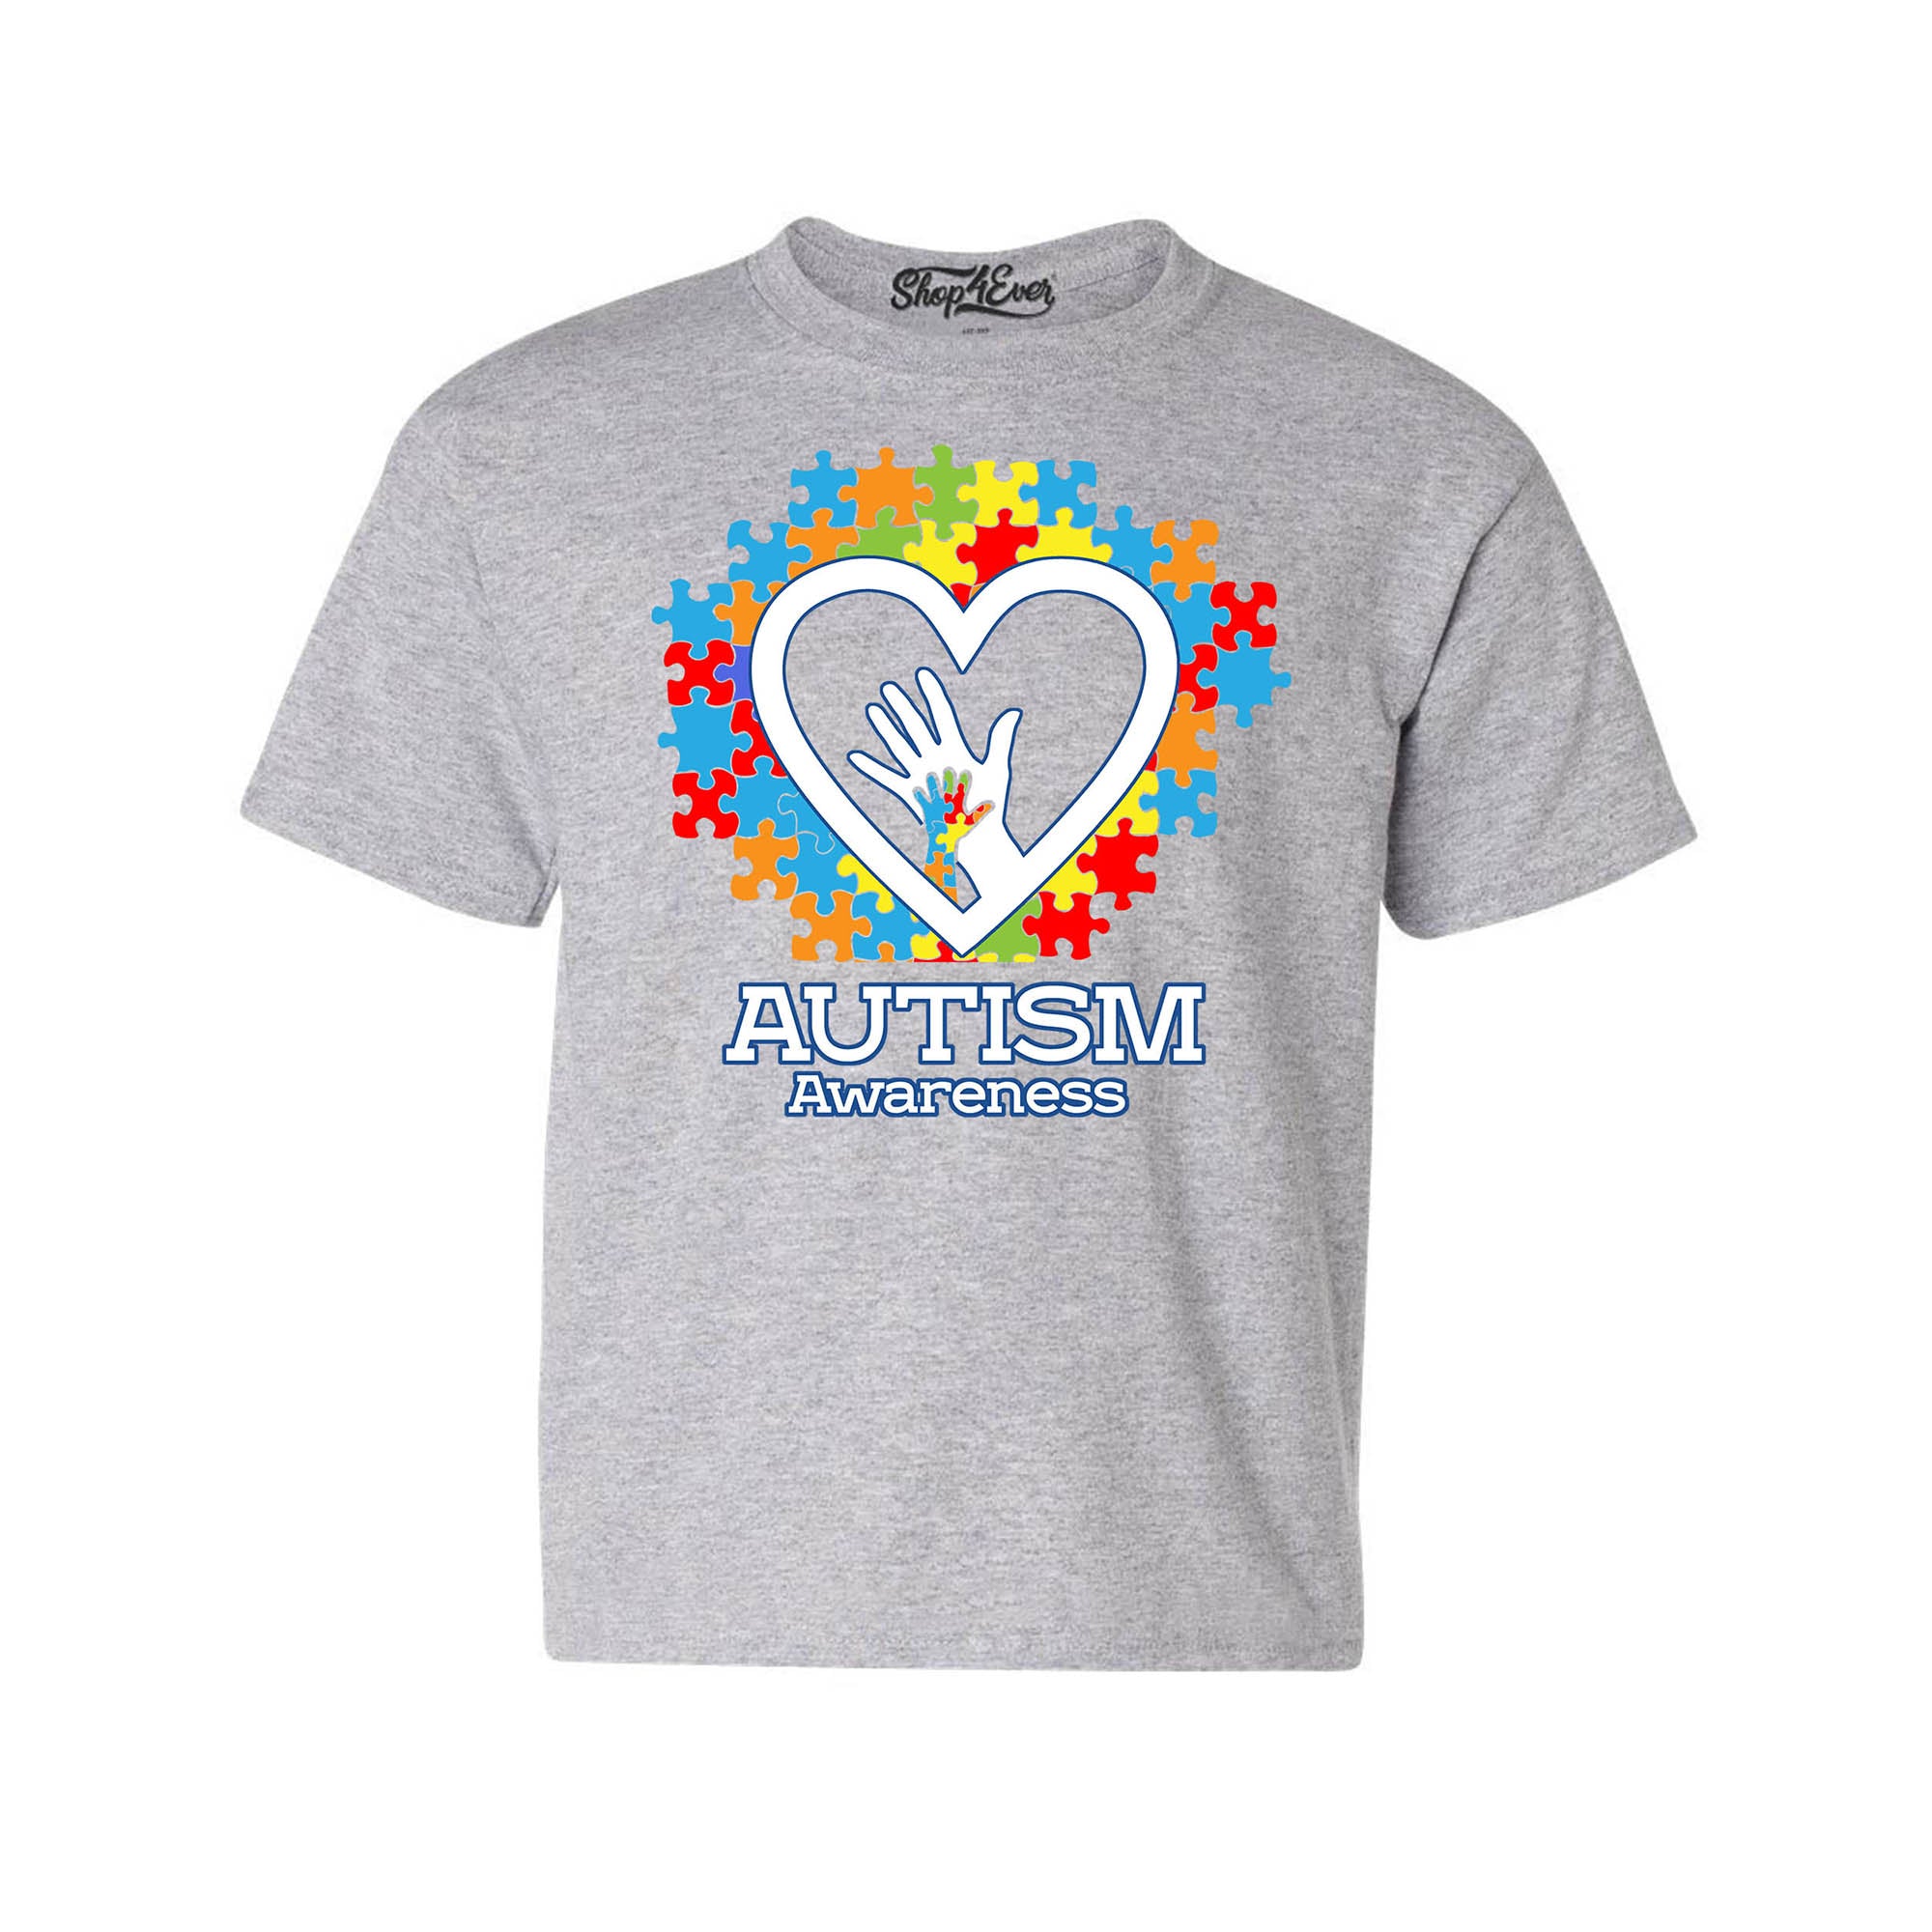 Autism Awareness Hands in Heart Child's T-Shirt Kids Tee